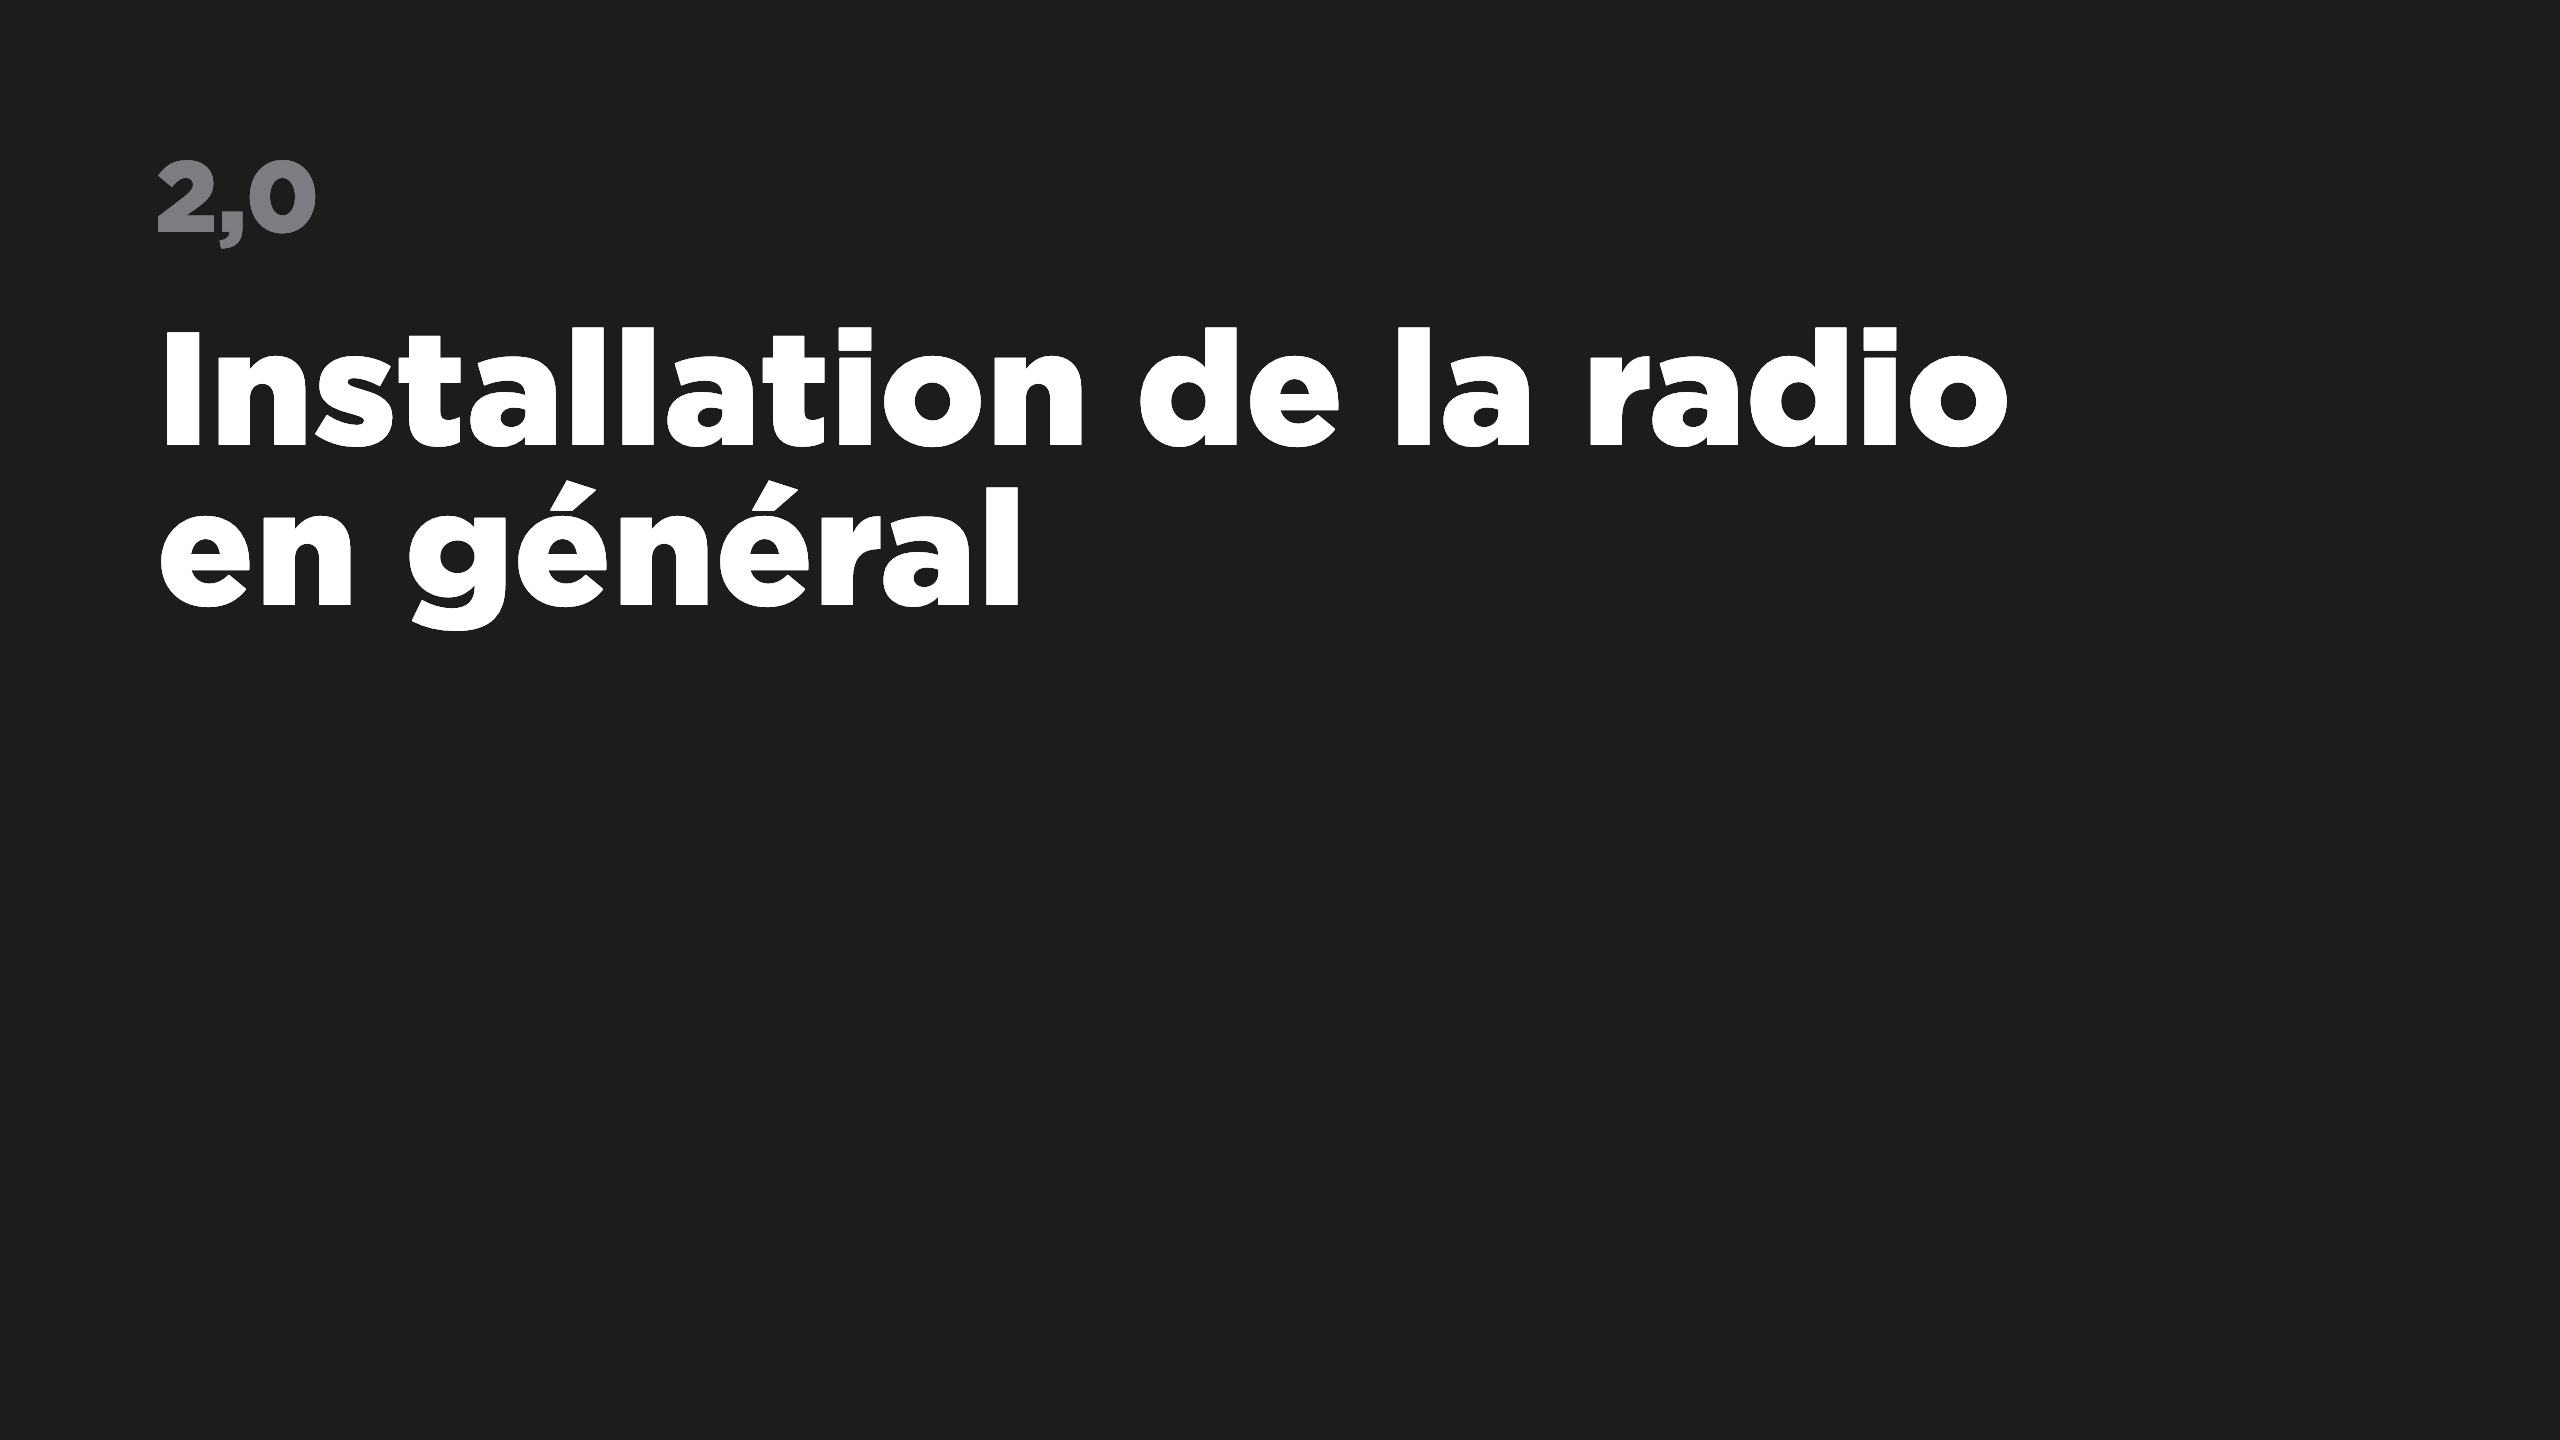 2.0 Installation de la radio en général